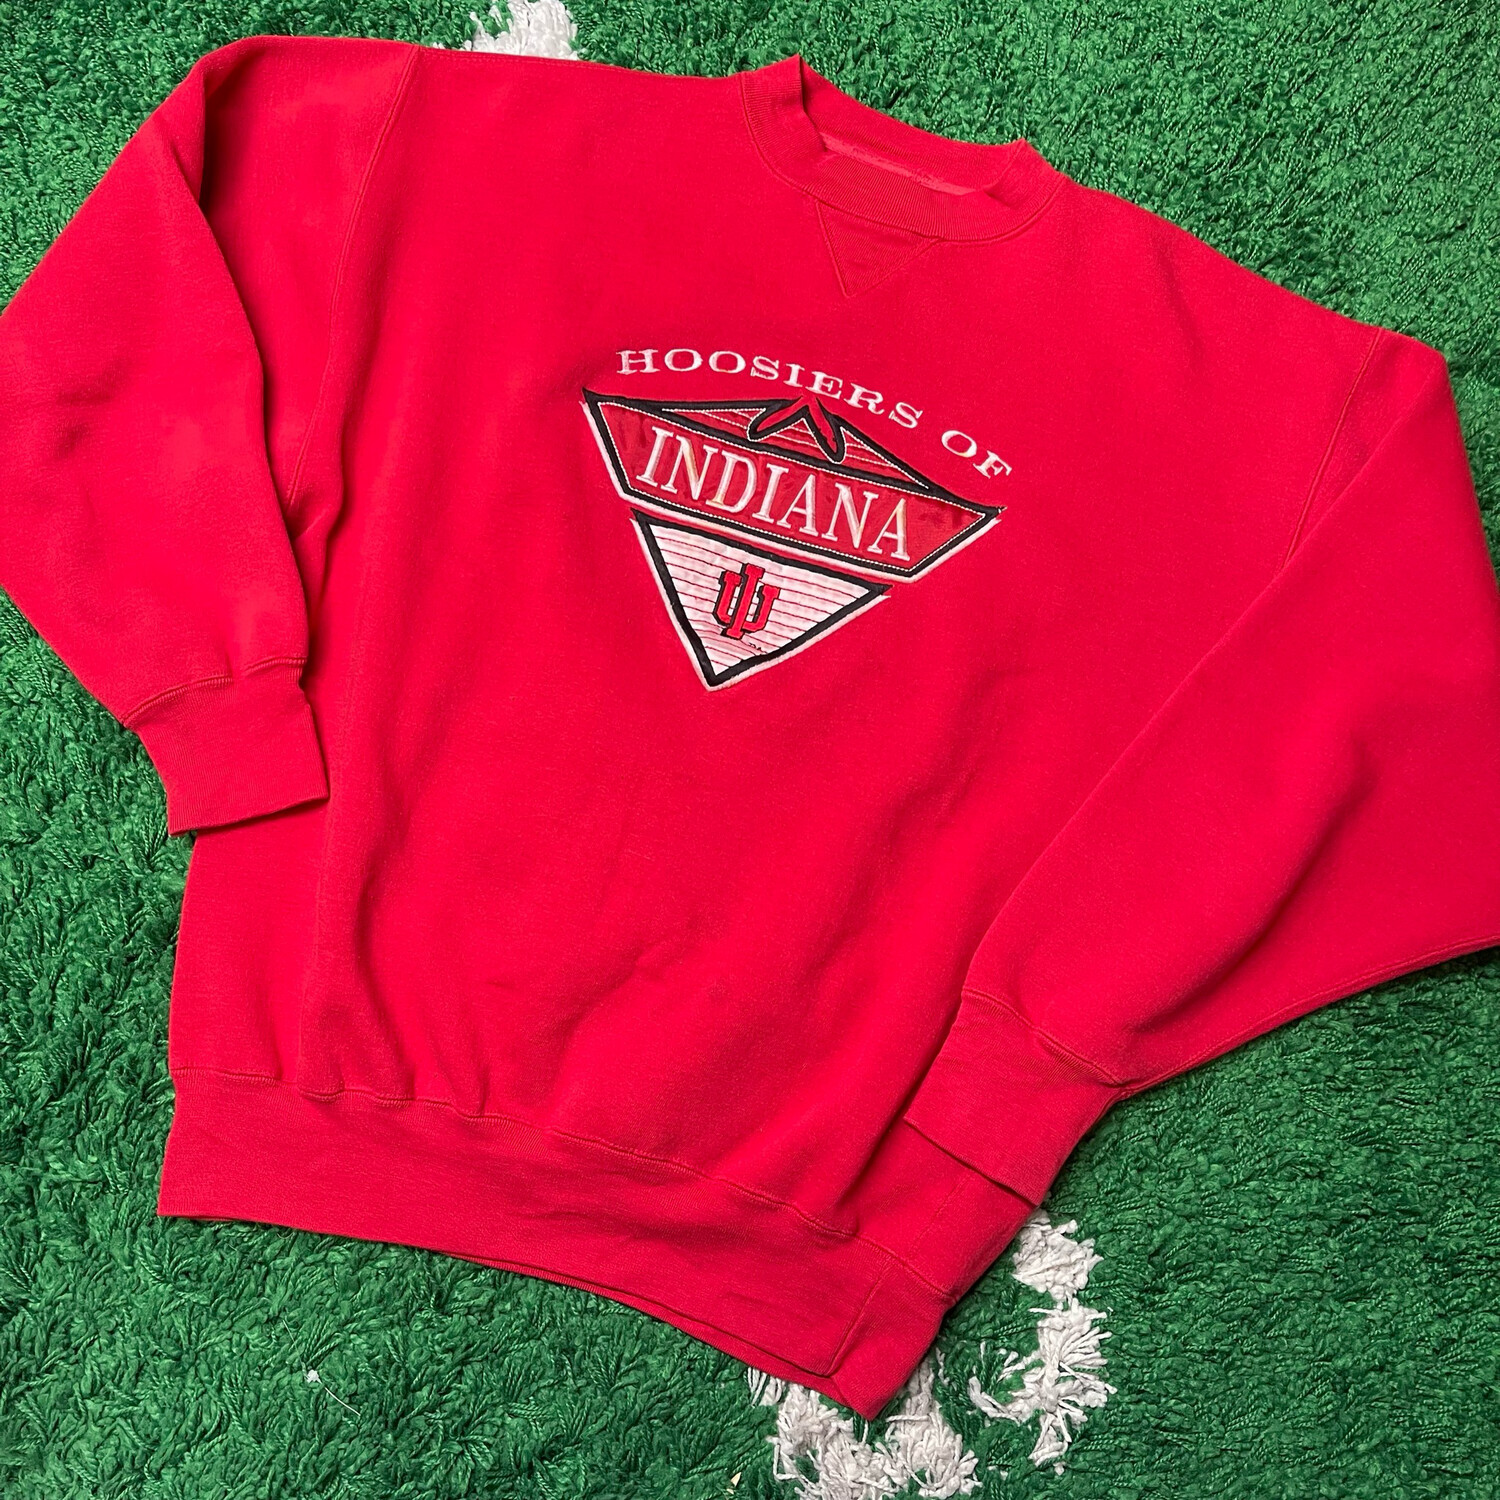 Hoosiers Of Indiana Crewneck Sweatshirt Size Large